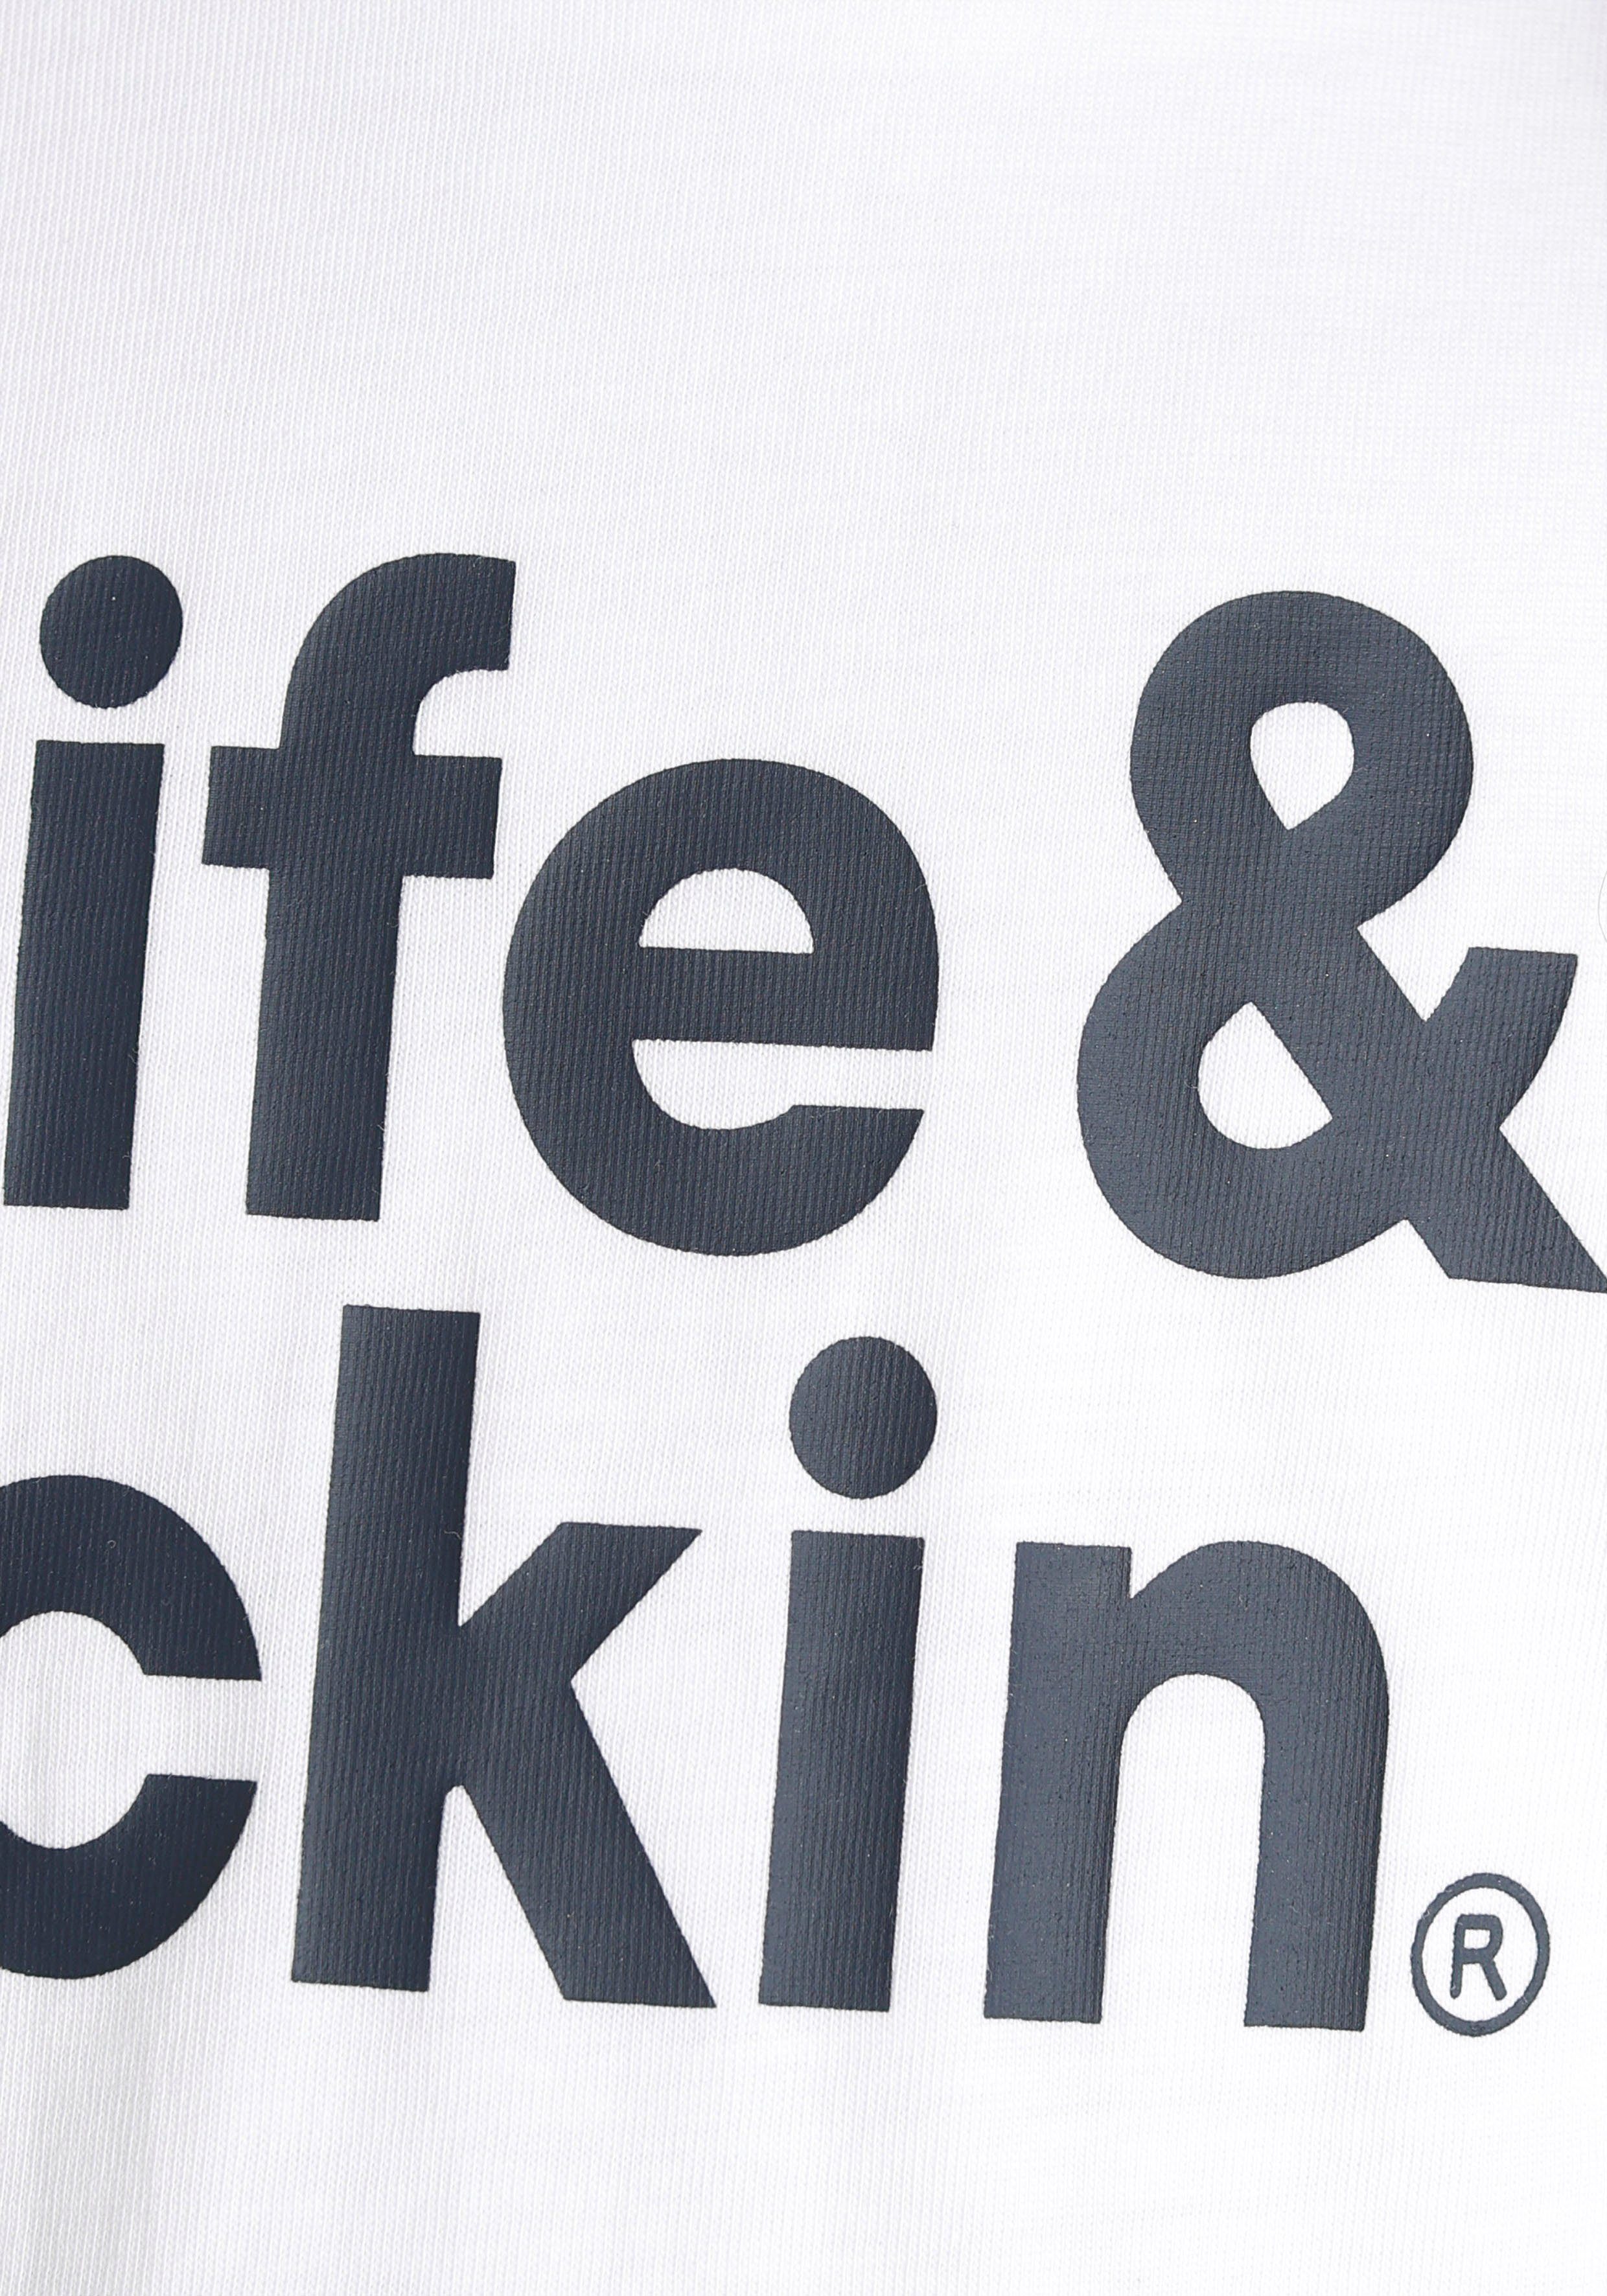 Druck Alife Kickin Logo & für NEUE Kids. Langarmshirt & mit Alife Kickin MARKE!